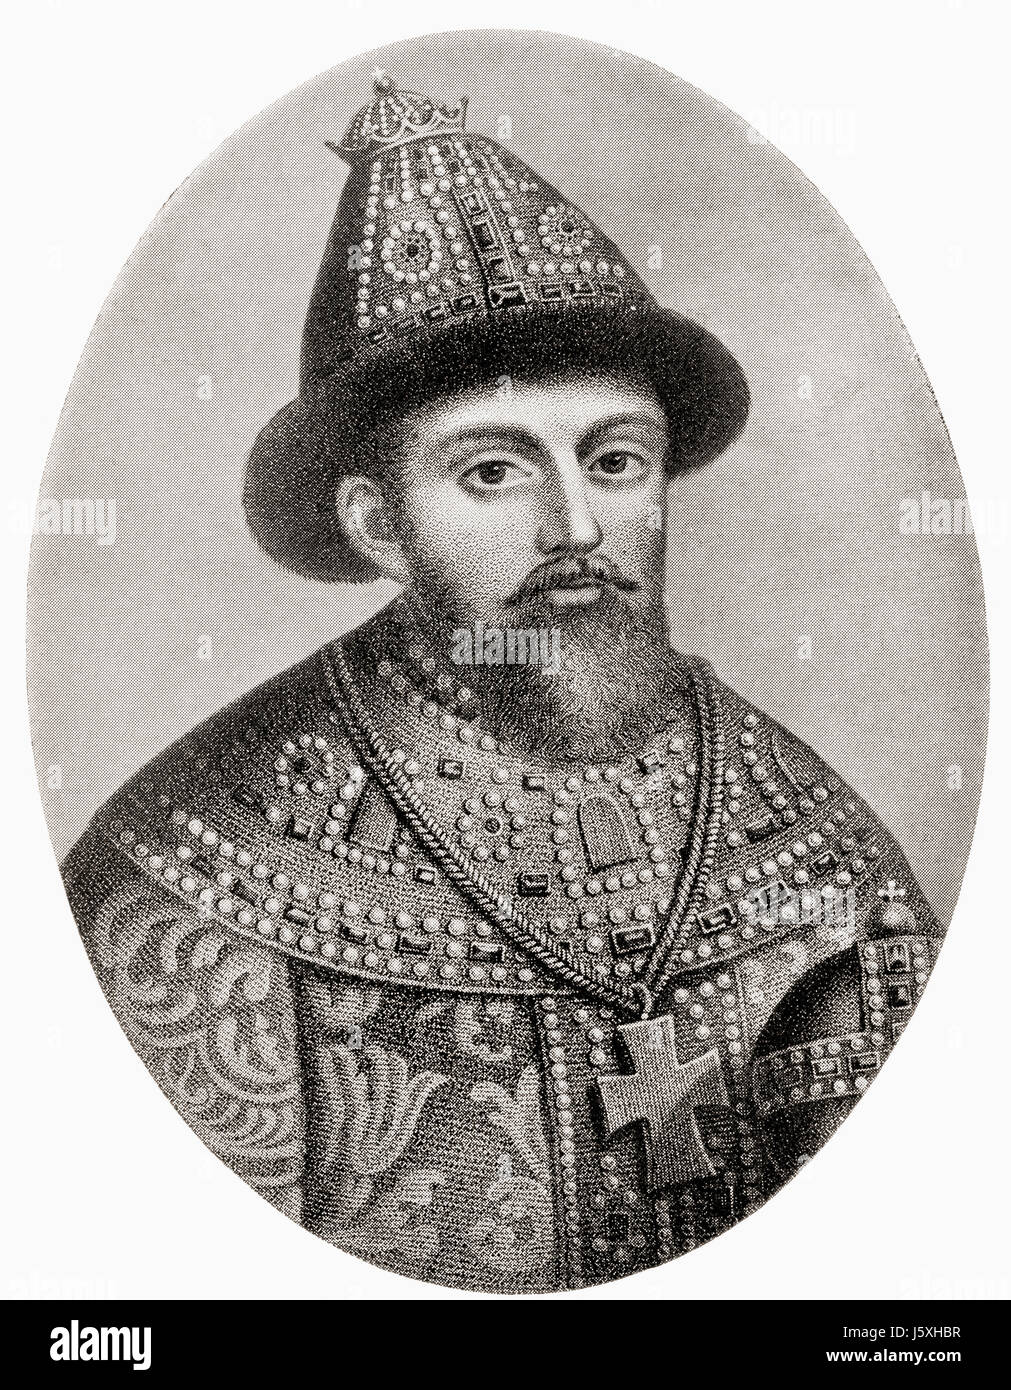 Michael I della Russia, 1596 - 1645. Il primo zar russo della casa di Romanov. Da Hutchinson nella storia delle nazioni, pubblicato 1915. Foto Stock